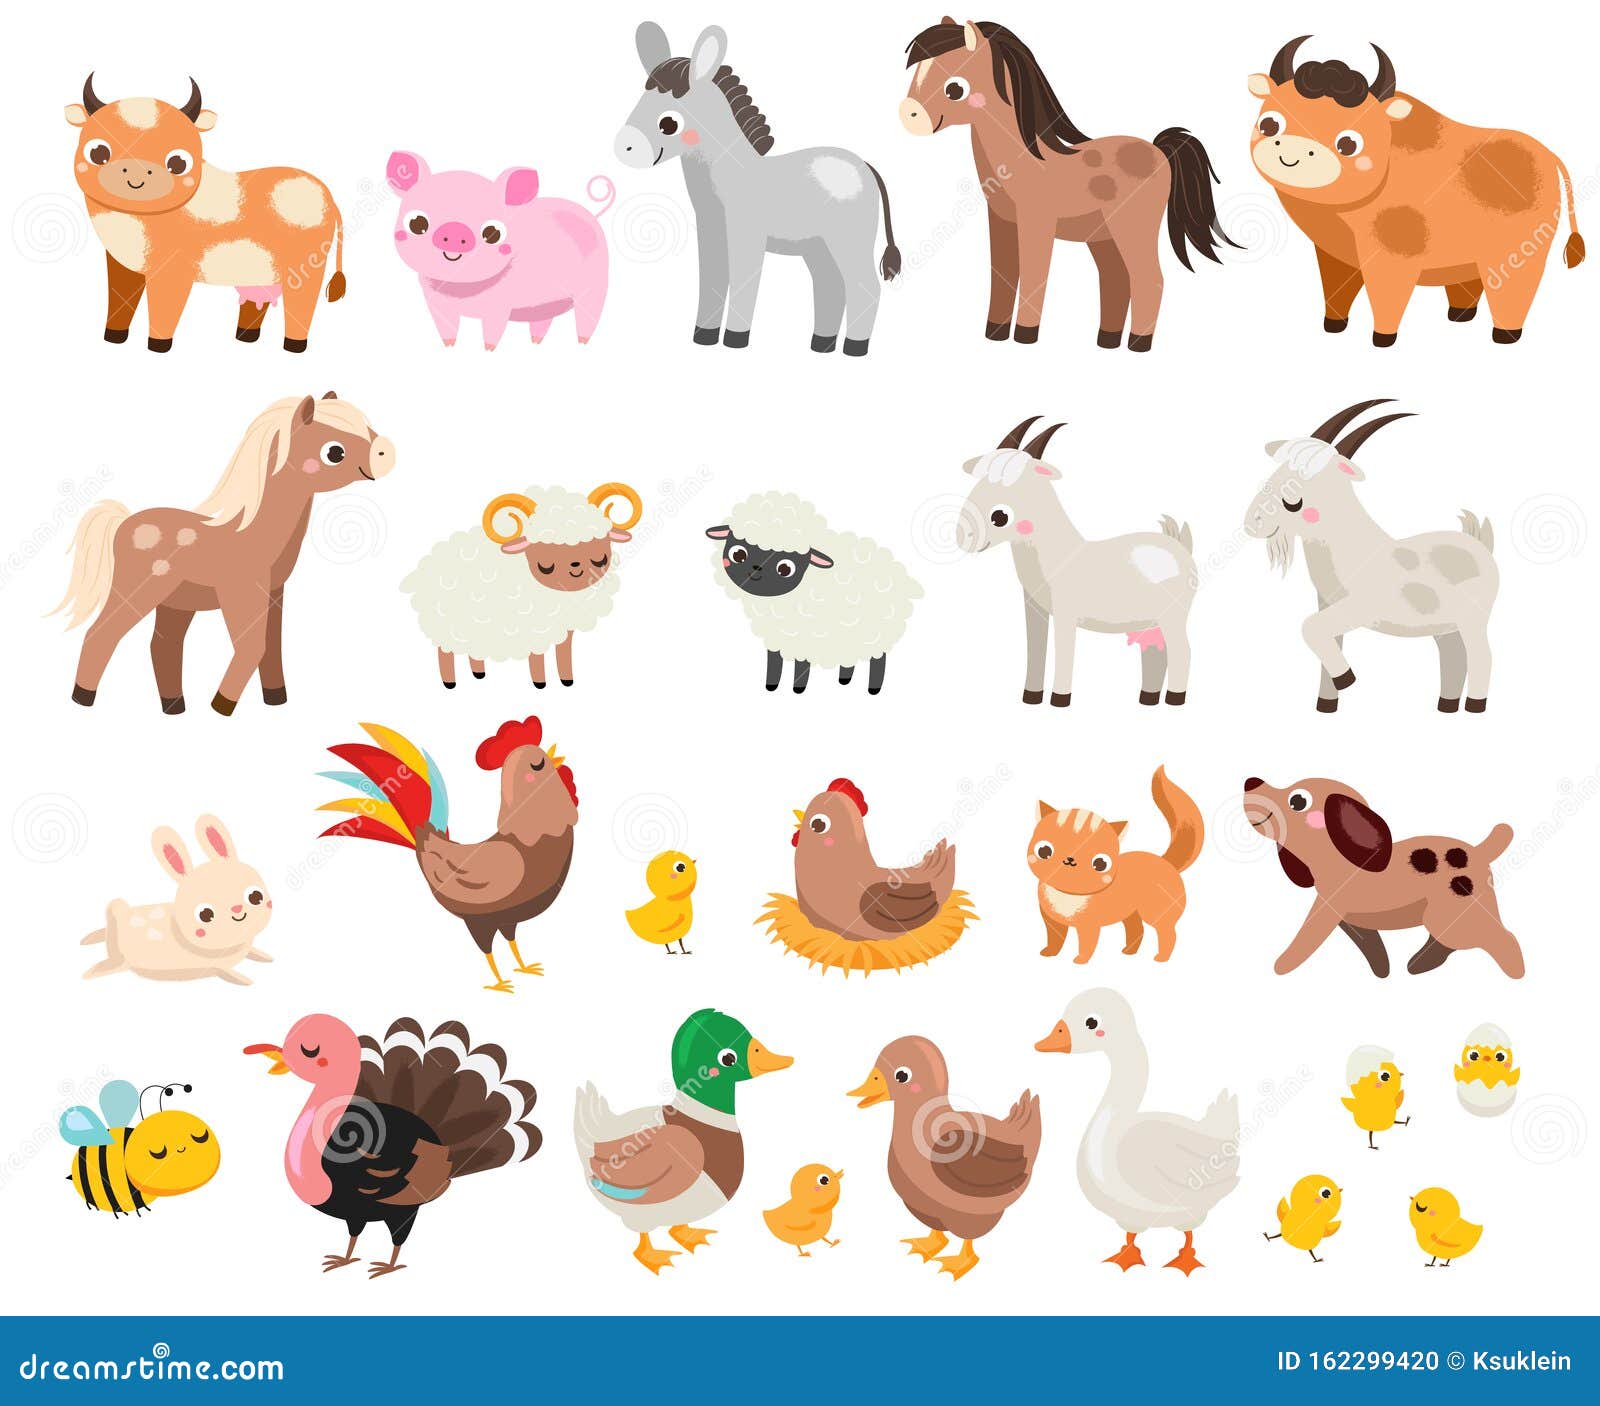 Animales en la Granja  Canciones Infantiles  Dibujos Animados  Lellobee  Latino  YouTube